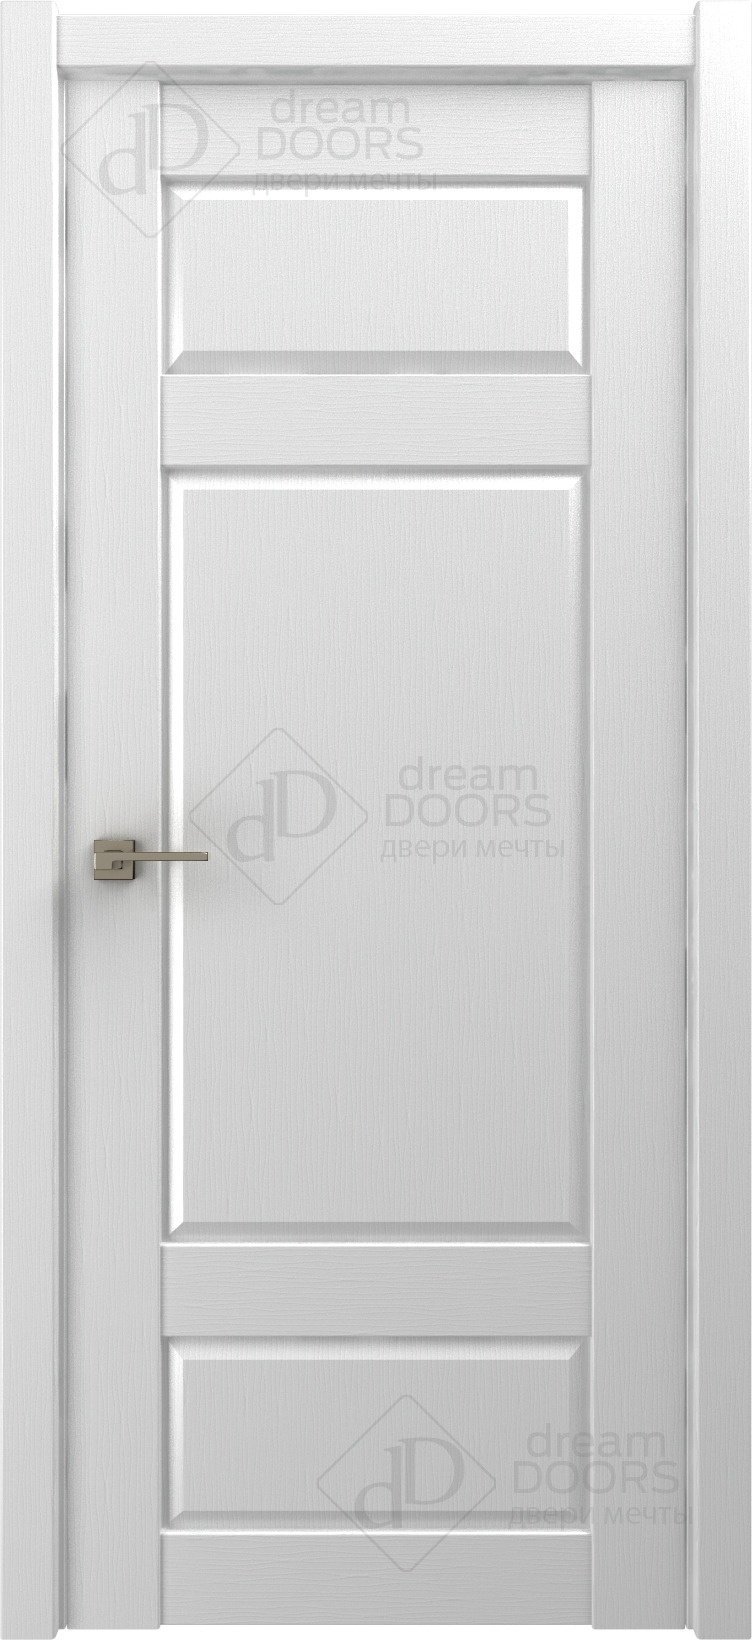 Dream Doors Межкомнатная дверь P15, арт. 18225 - фото №3